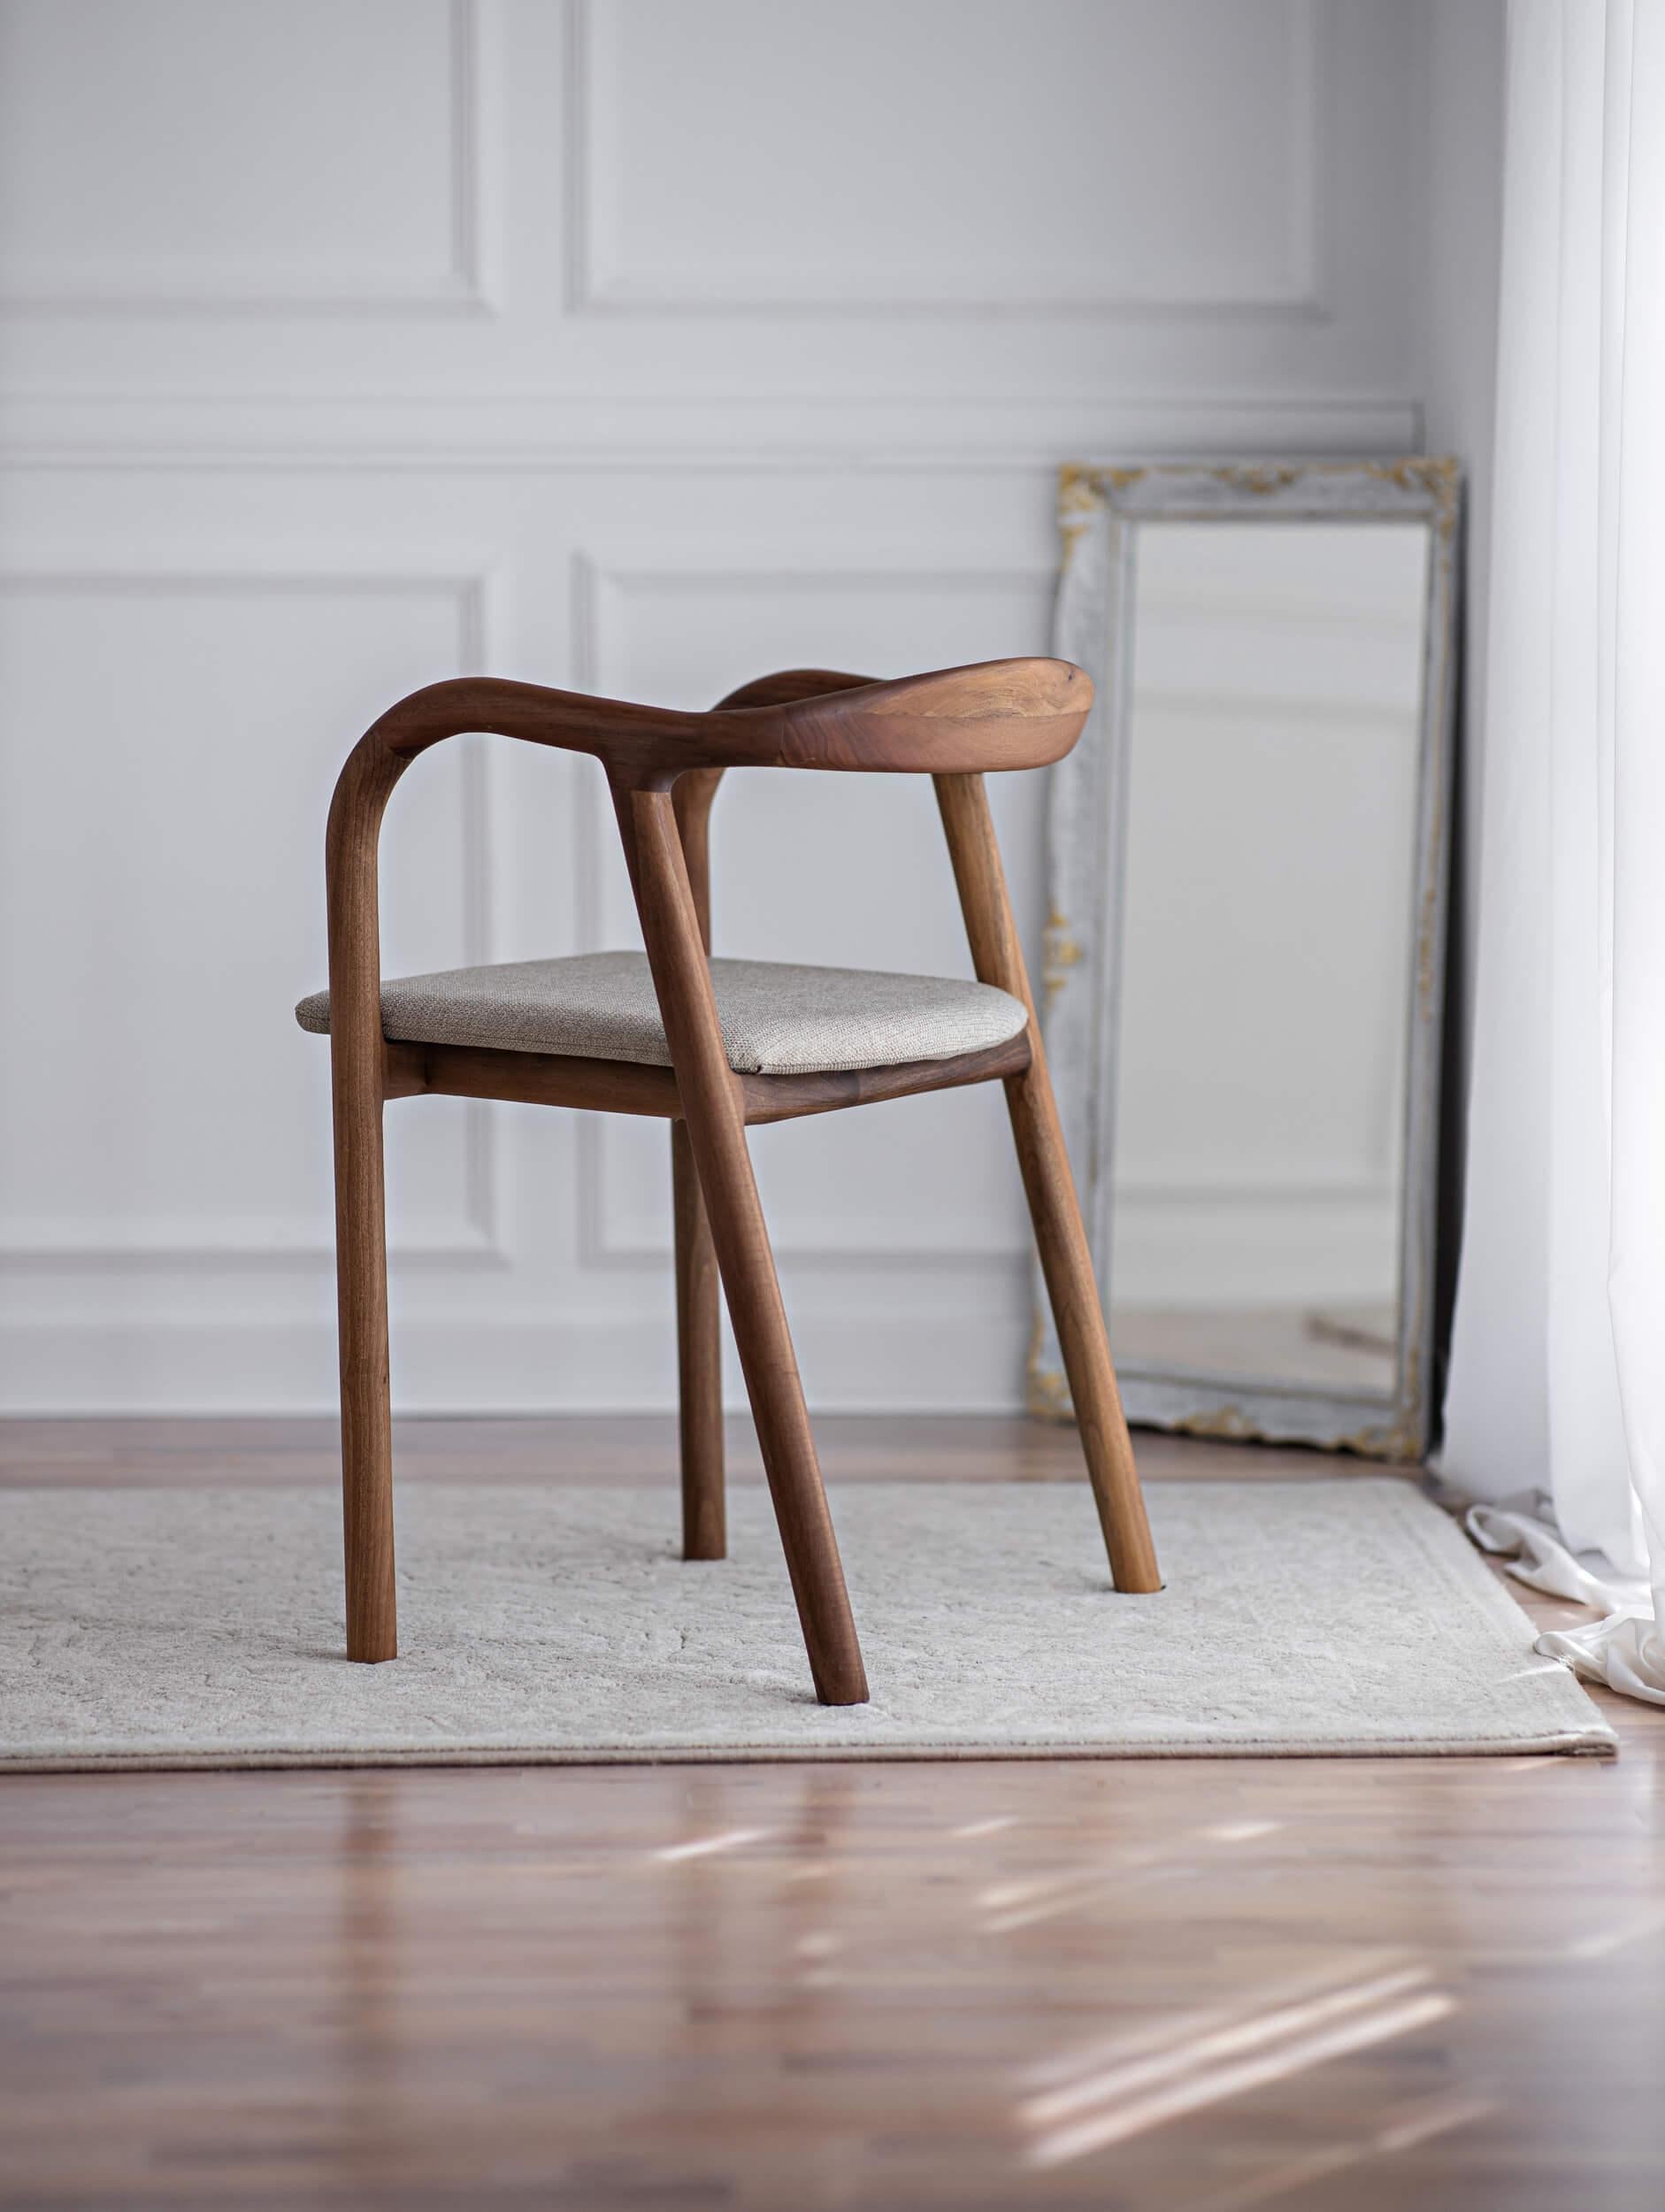 Der Stuhl Mosso ist ein handgefertigter Stuhl aus massivem, hochwertigem Walnussholz.
Für seine Herstellung verwenden wir nur sorgfältig ausgewählte Holzstücke.

Der Stuhl wurde von dem französischen Architekten Charlie Pommier in Paris (Frankreich)